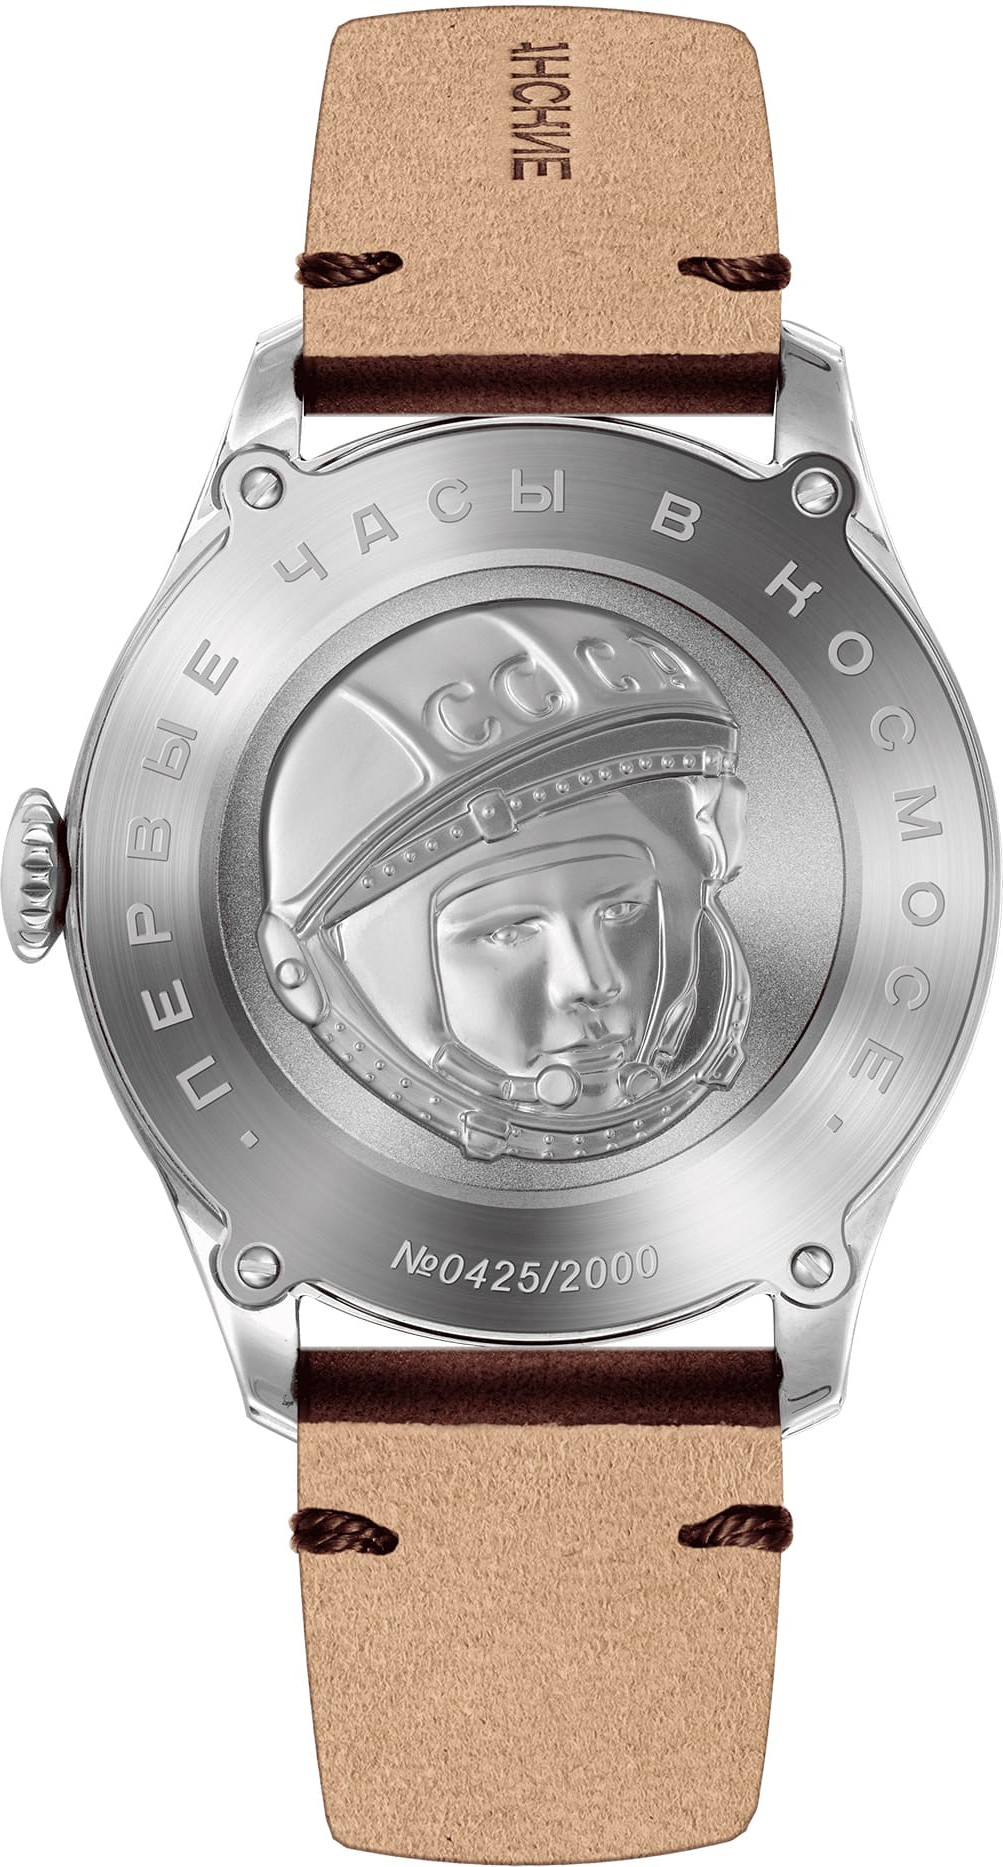  Sturmanskie Gagarin Vintage Retro 2609-3745129 